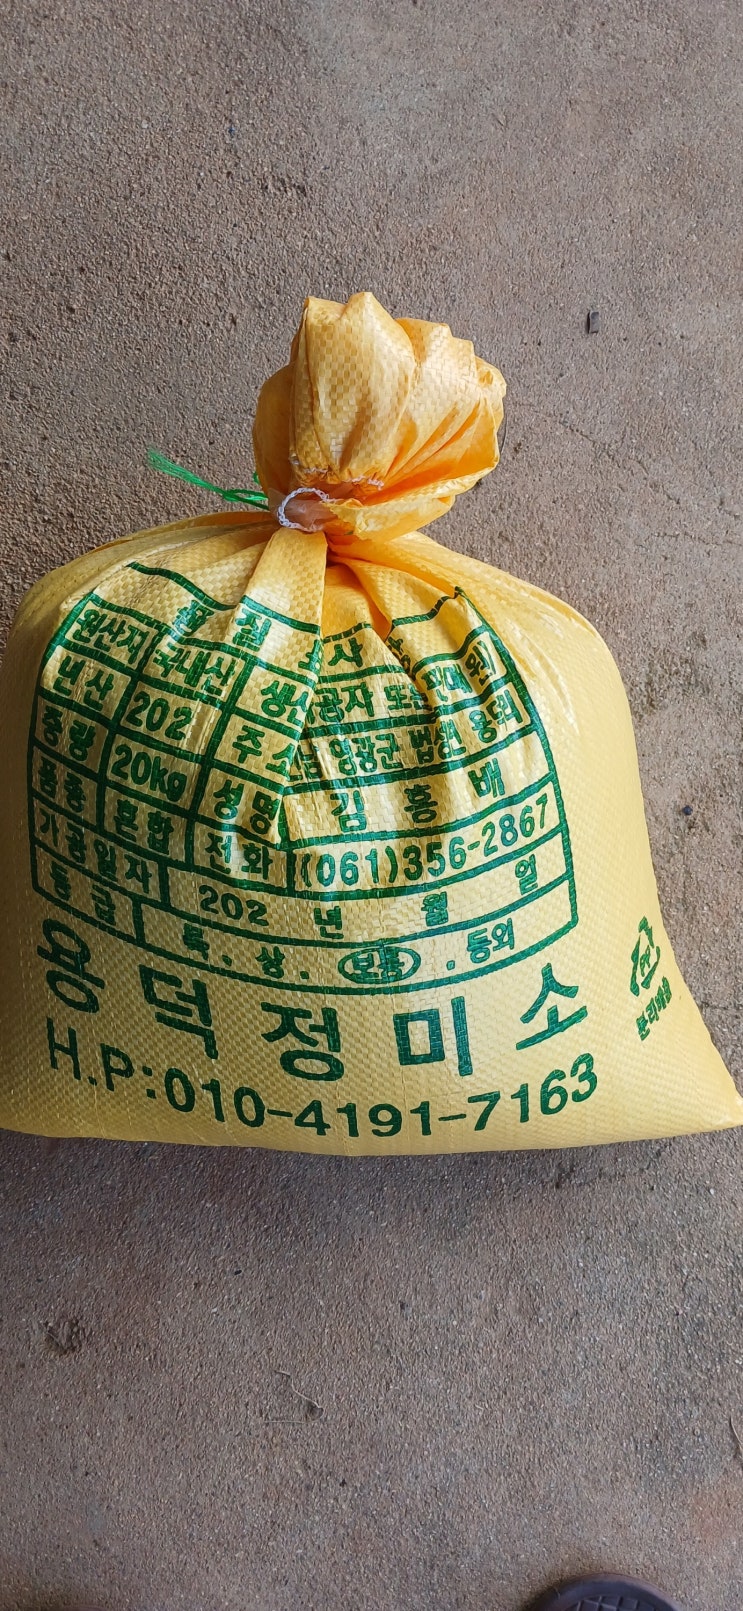 방금 도정한 따끈따끈한 2022년 영광 새청무쌀 (현주네팜)